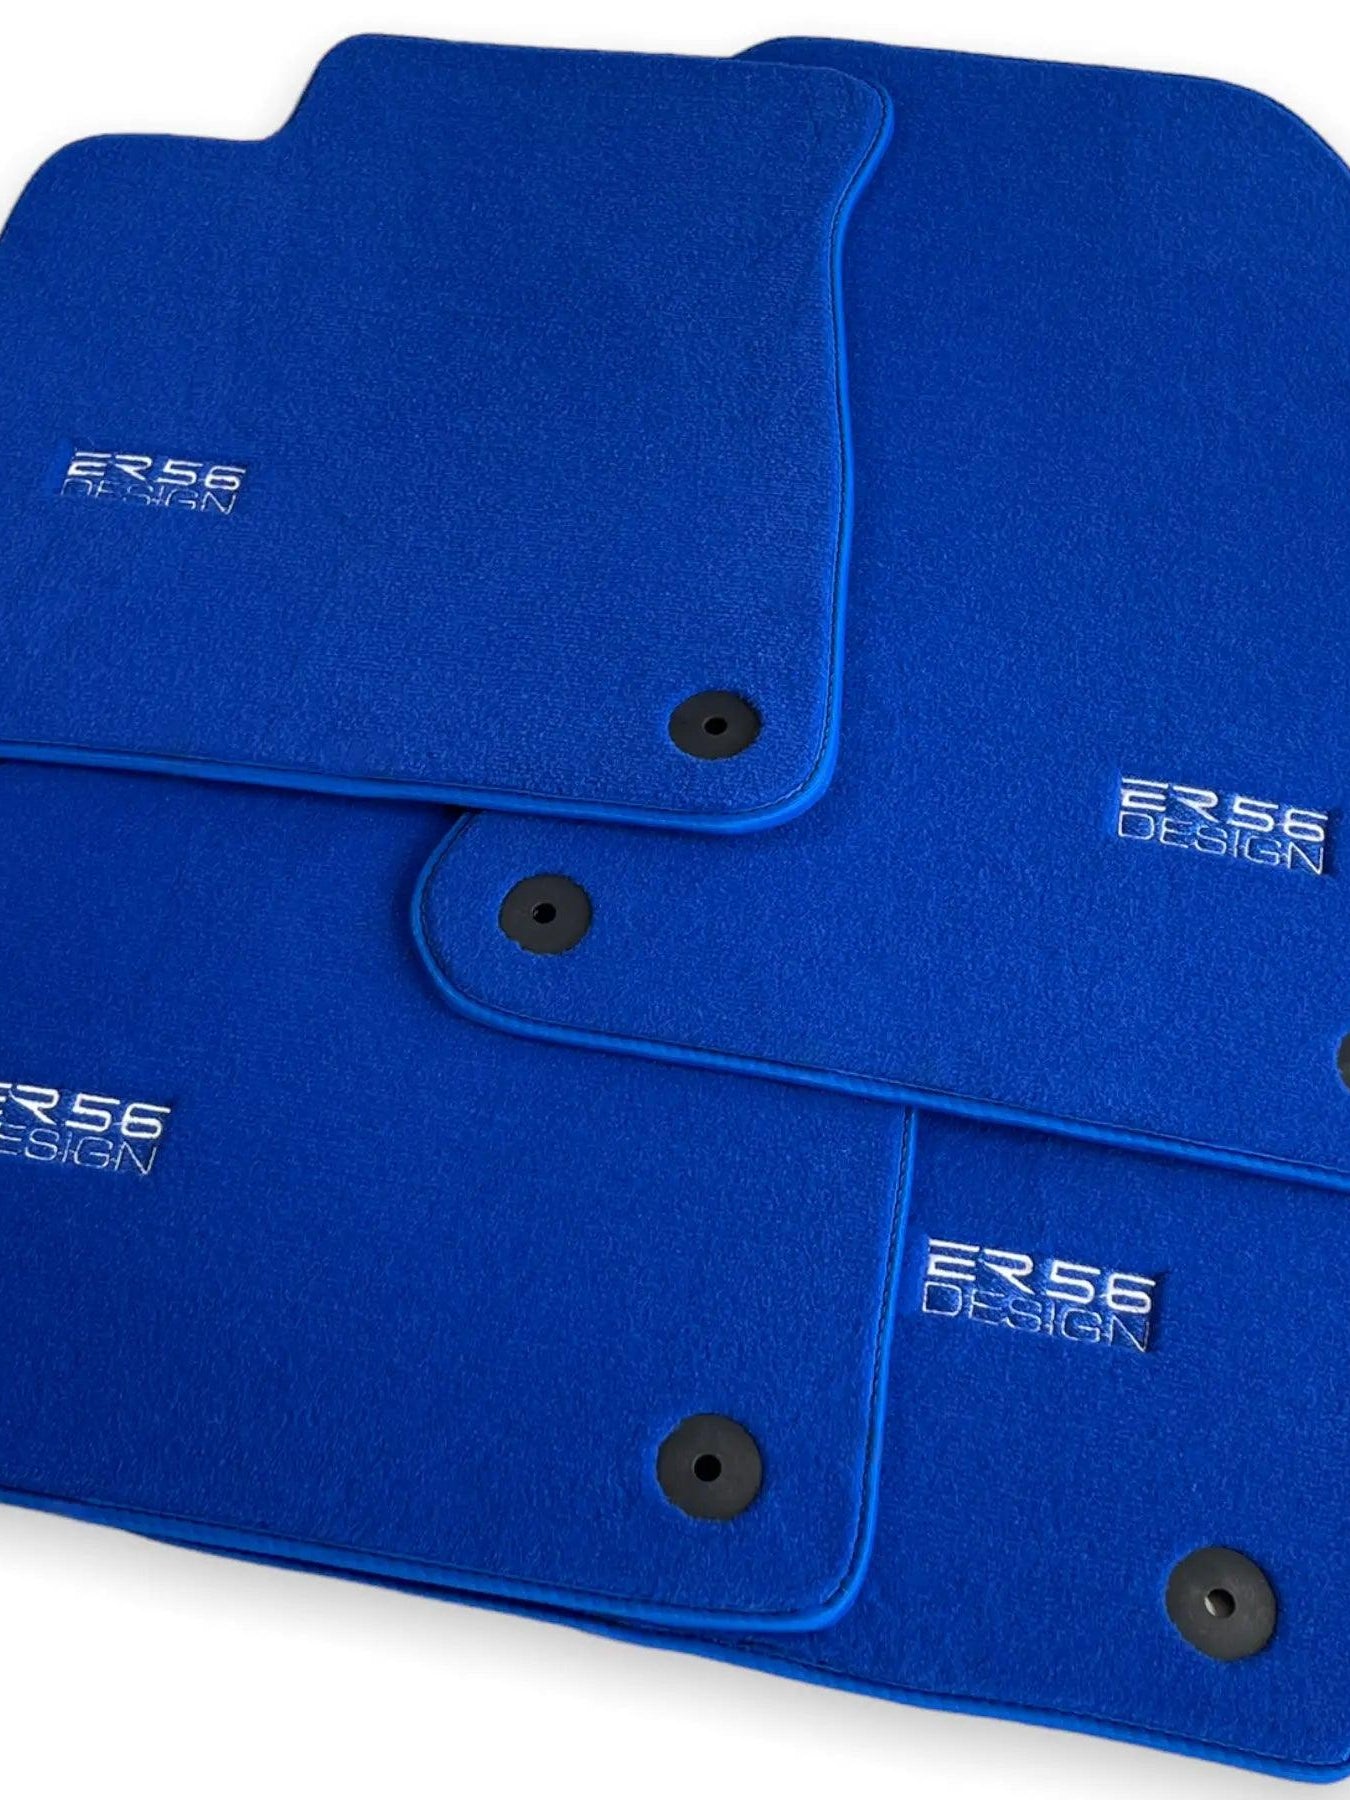 Blue Floor Mats for Audi A6 - C6 Avant (2004-2008) | ER56 Design